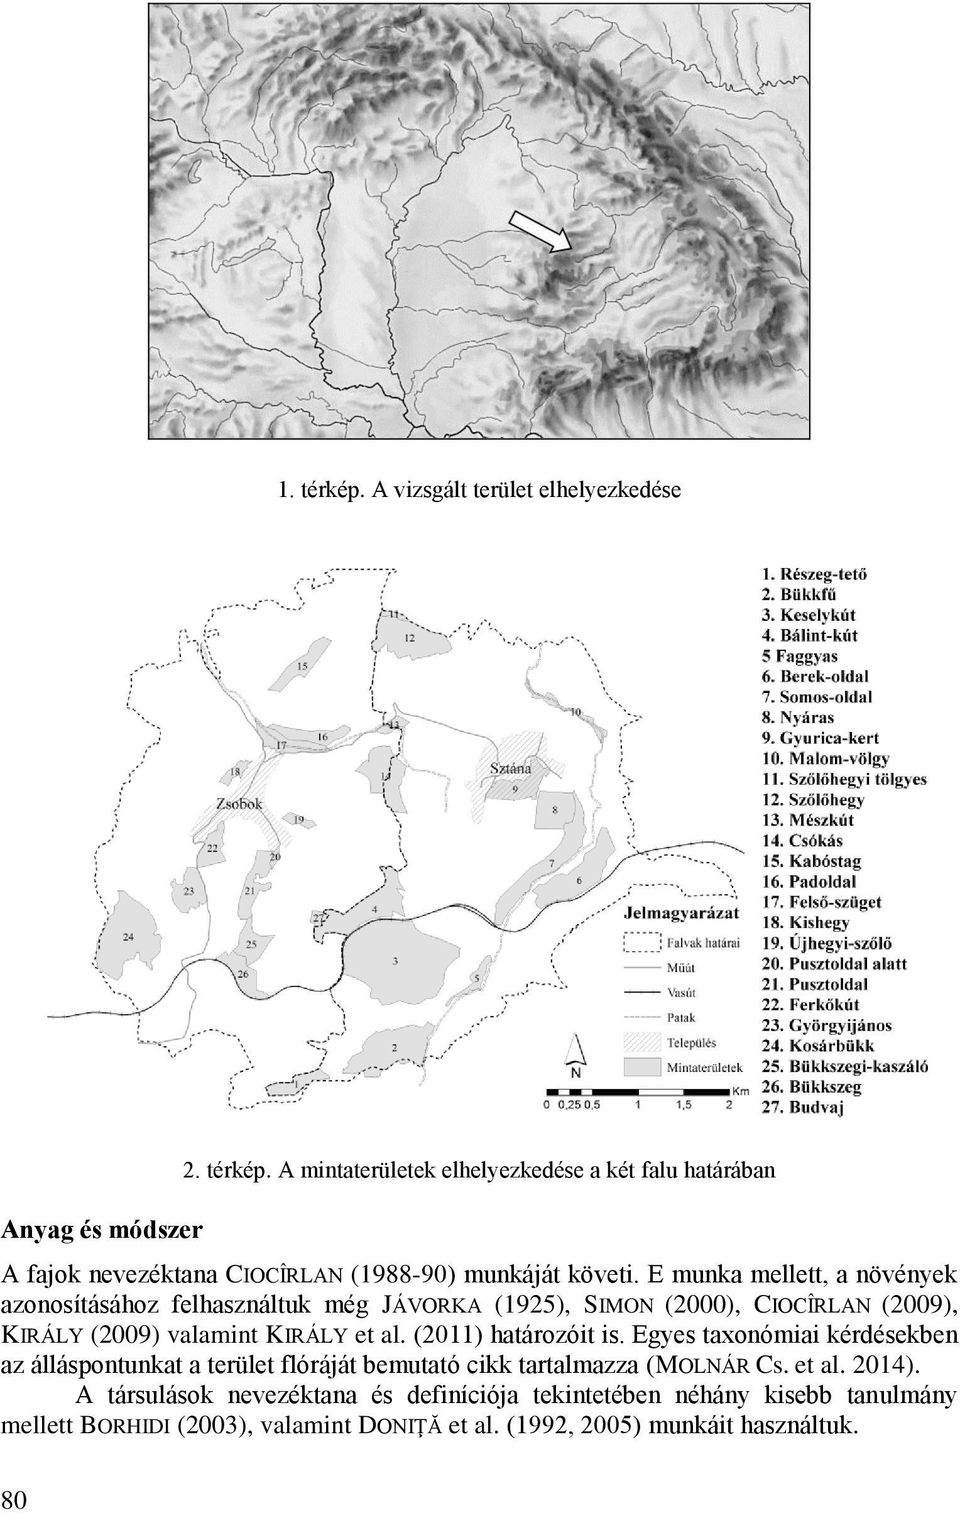 (2011) határozóit is. Egyes taxonómiai kérdésekben az álláspontunkat a terület flóráját bemutató cikk tartalmazza (MOLNÁR Cs. et al. 2014).